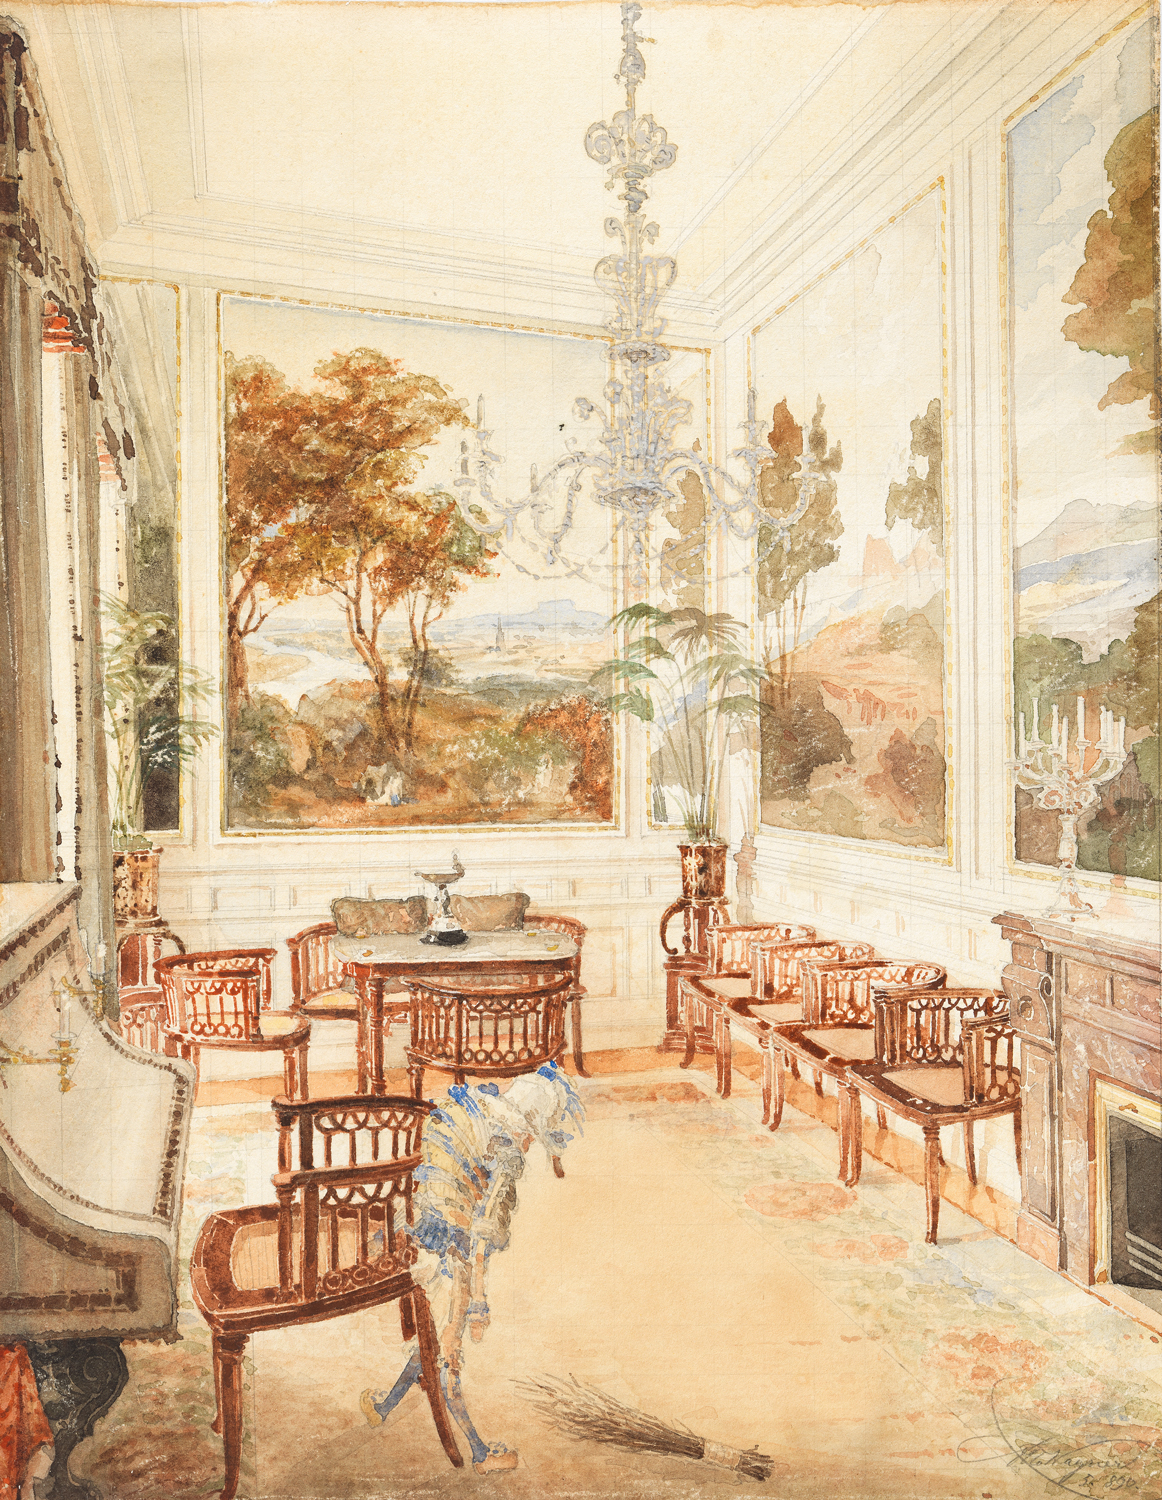 Aquarellierte Zeichnung des Salons mit Sitzgelegenheiten, Luster und Tapeten mit Landschaftsdarstellungen